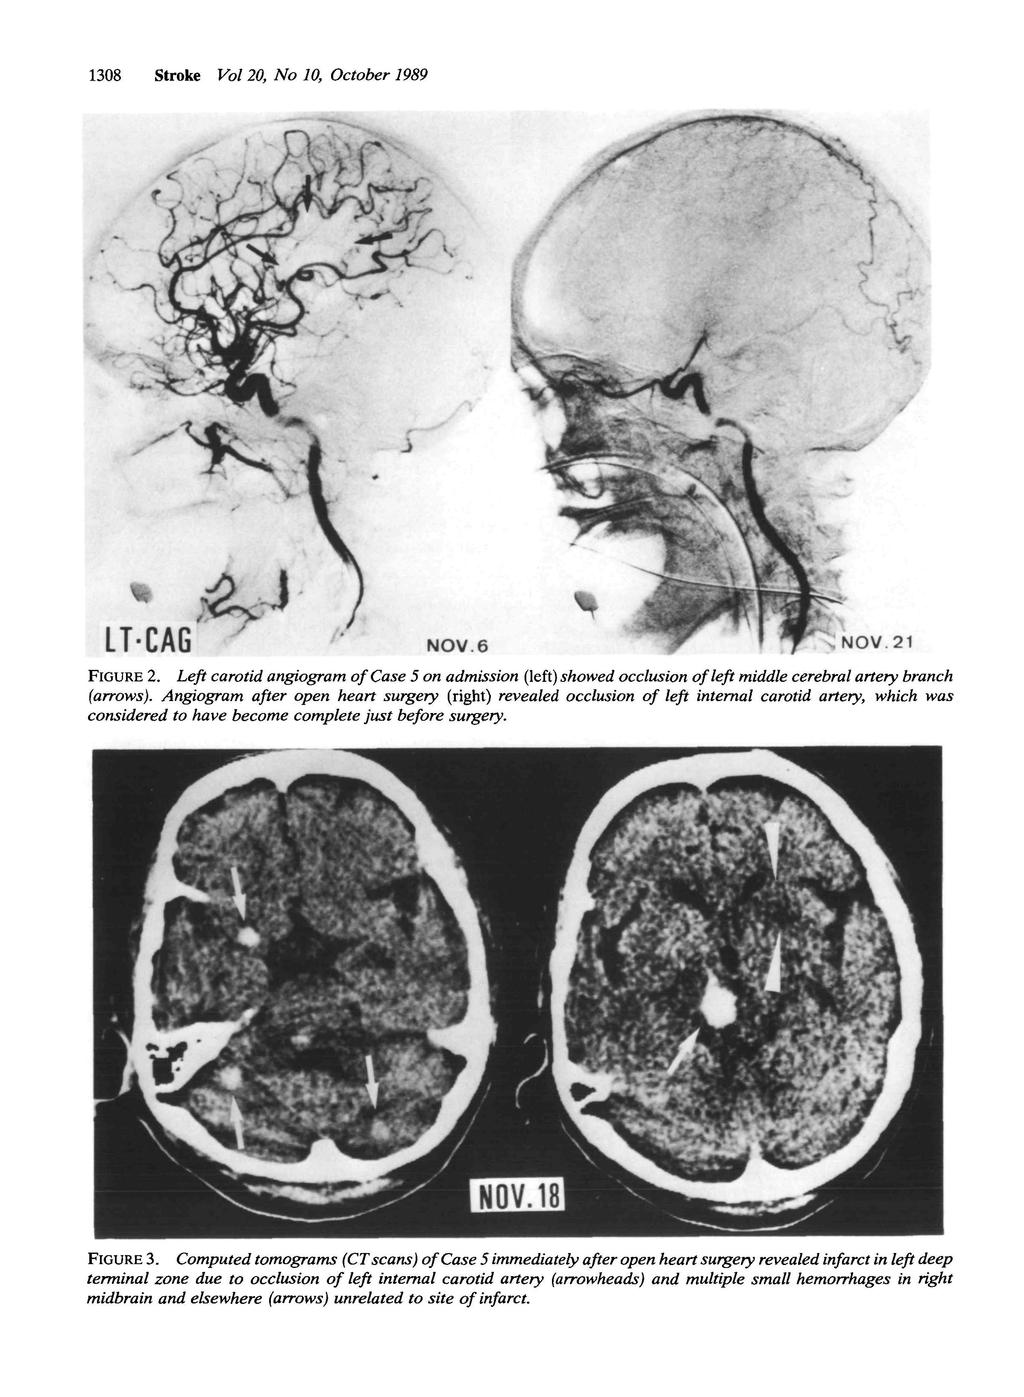 308 Stroke Vol 20, No 0, October 989 NOV. 6, NOV 2 FIGURE 2. Left carotid angiogram of Case 5 on admission (left) showed occlusion of left middle cerebral artery branch (arrows).